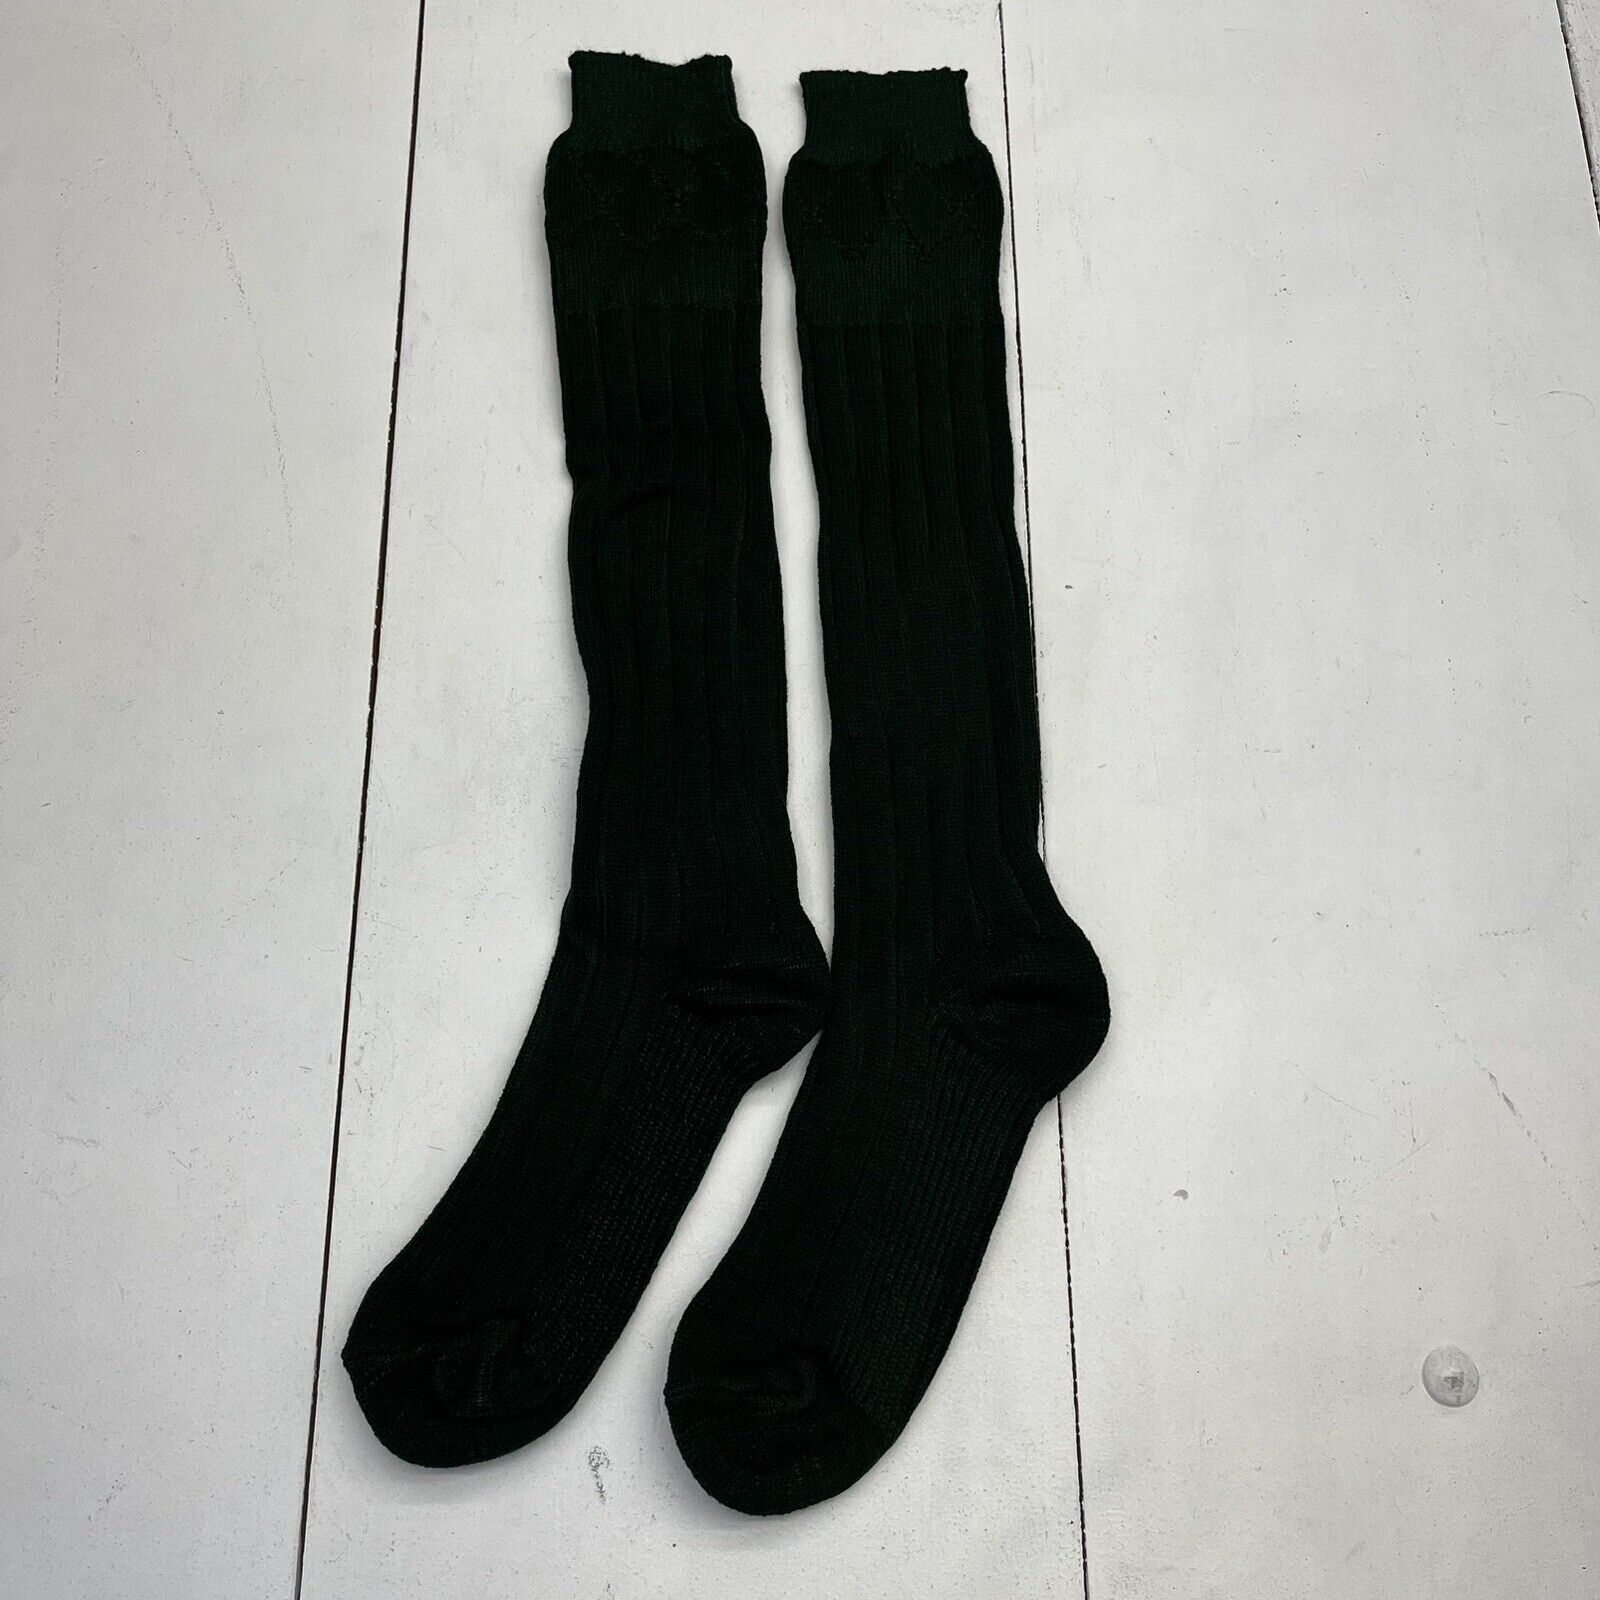 Sports & Kilts Green Knee High Knit Socks NEW